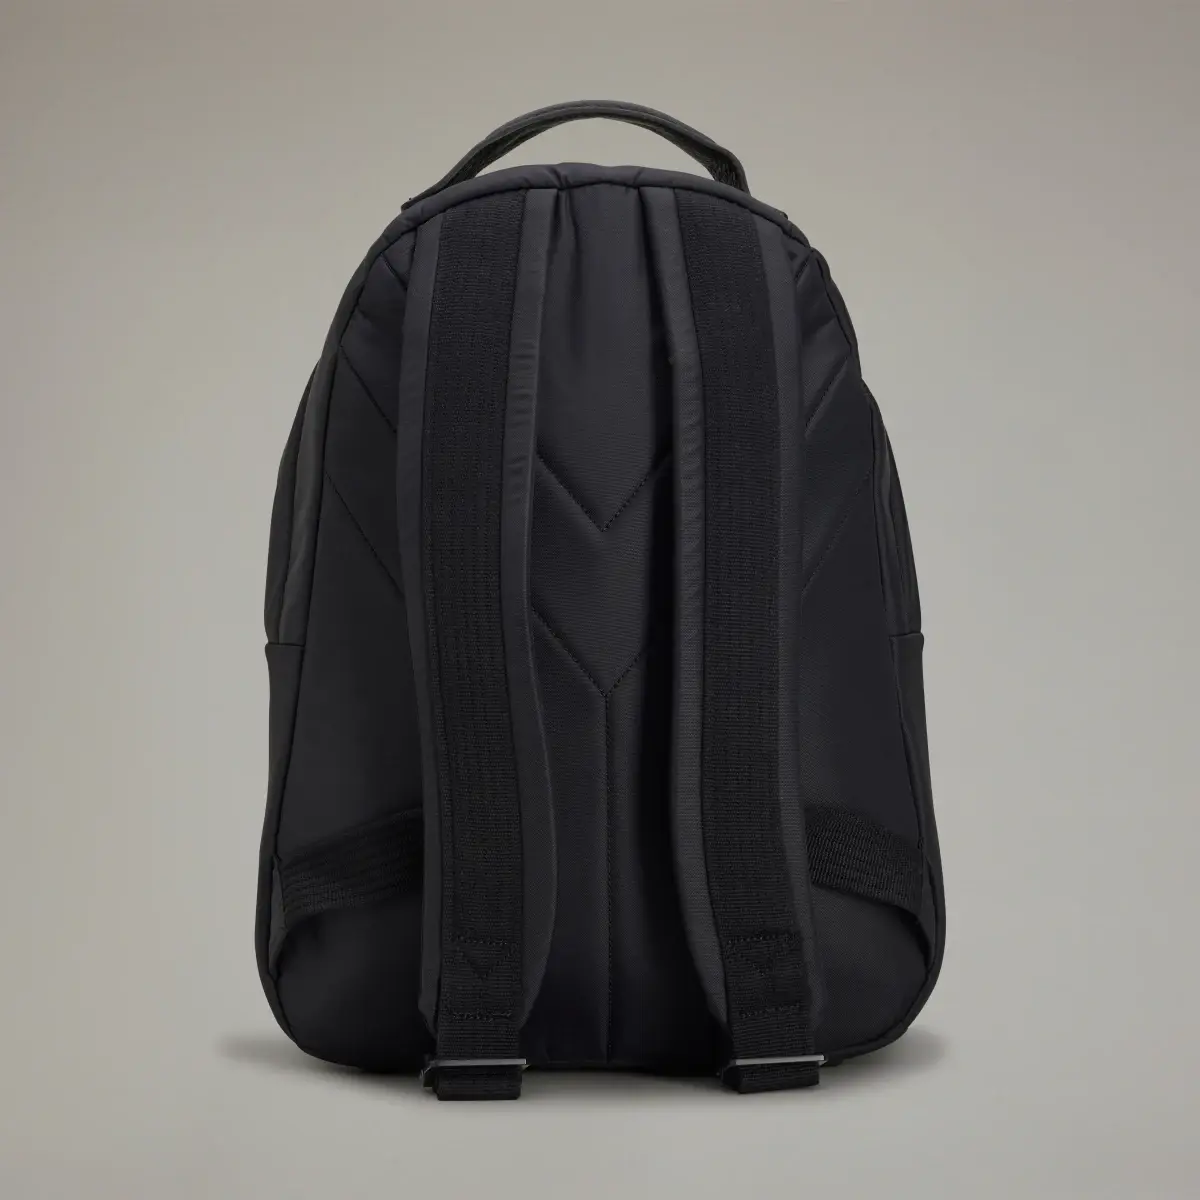 Adidas Y-3 Lux Gym Bag. 3